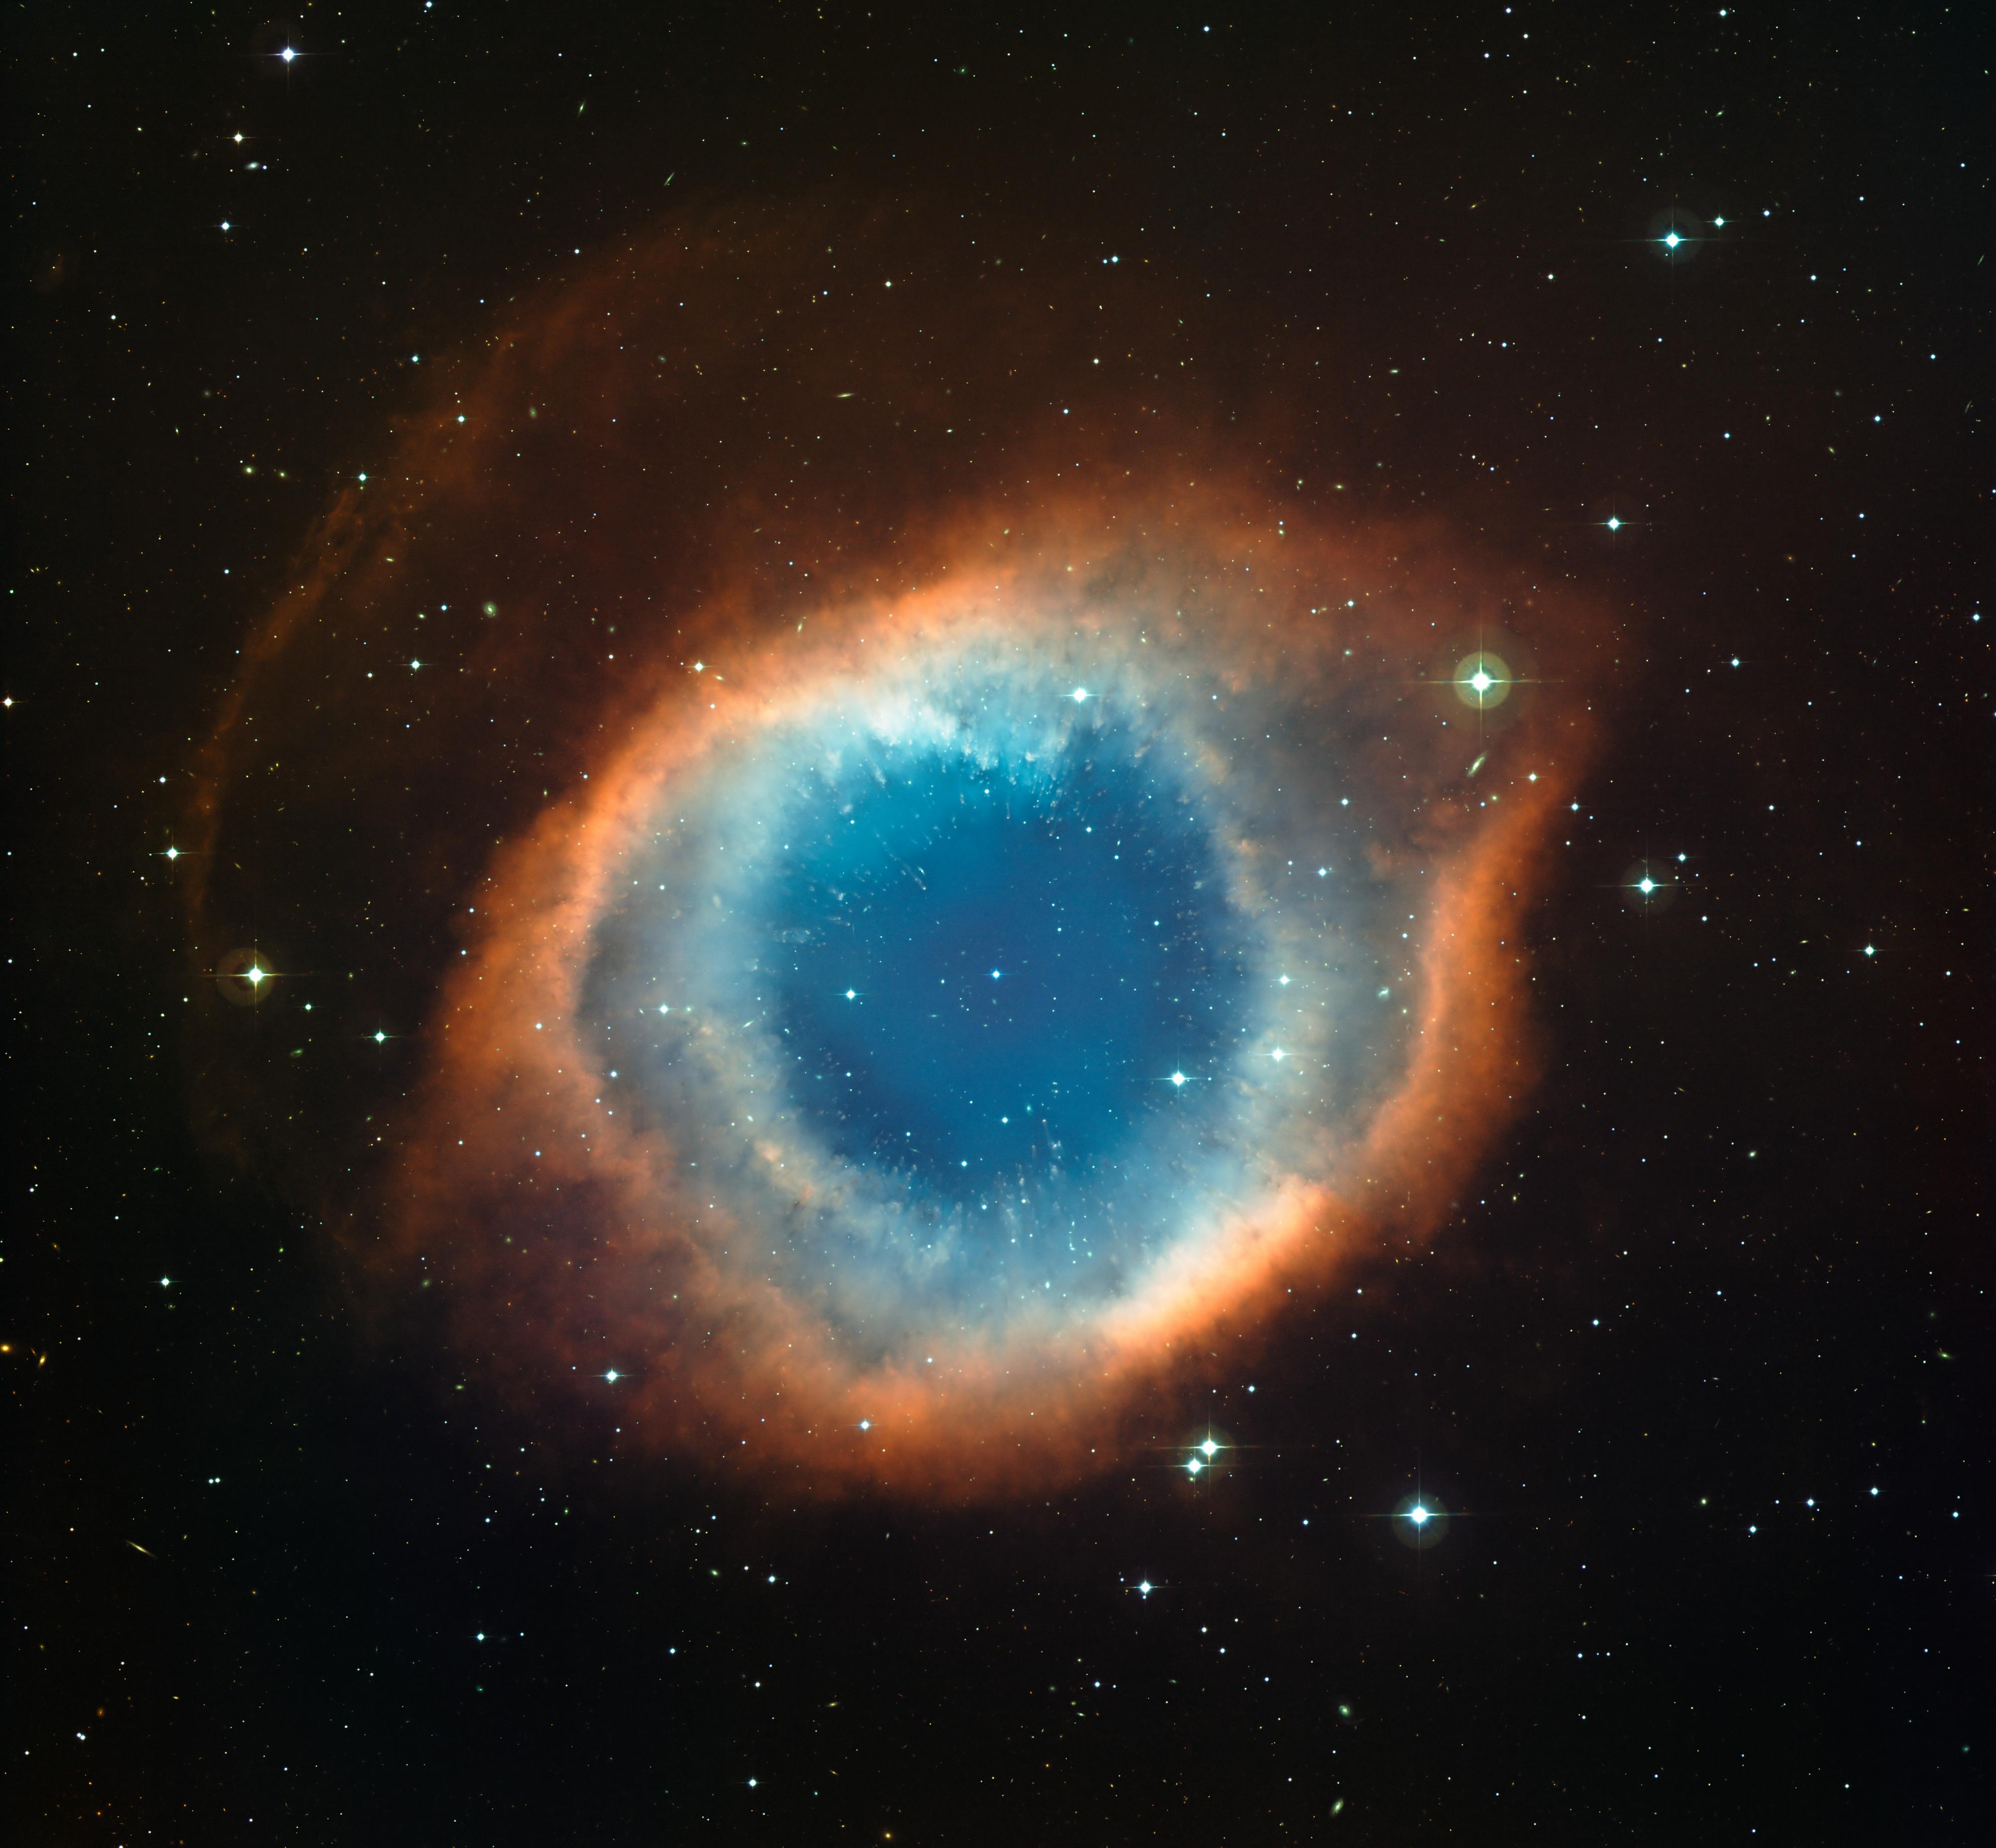 现实中濒死红巨星产生的星云叫行星状星云(planetary nebula),因卧谮